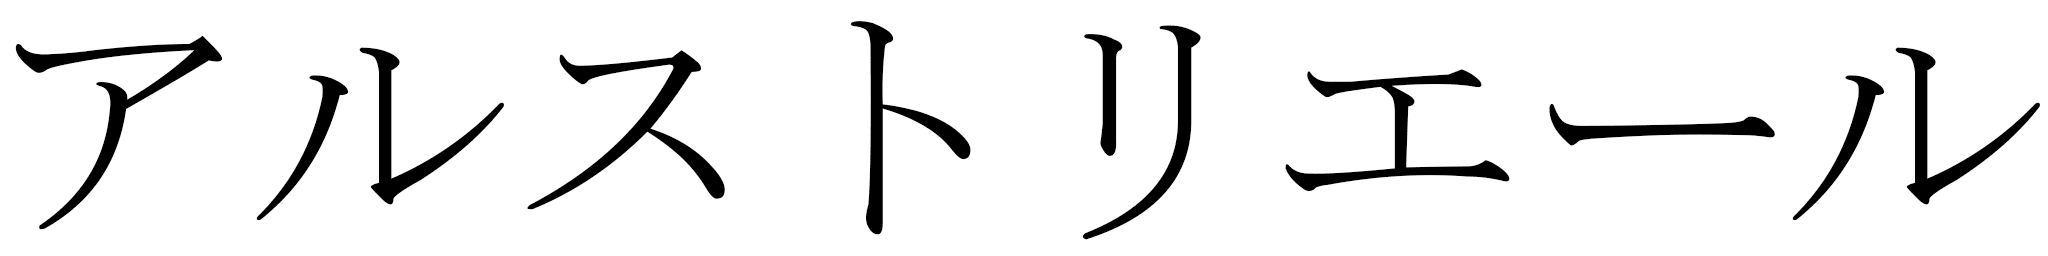 Alustriel en japonais